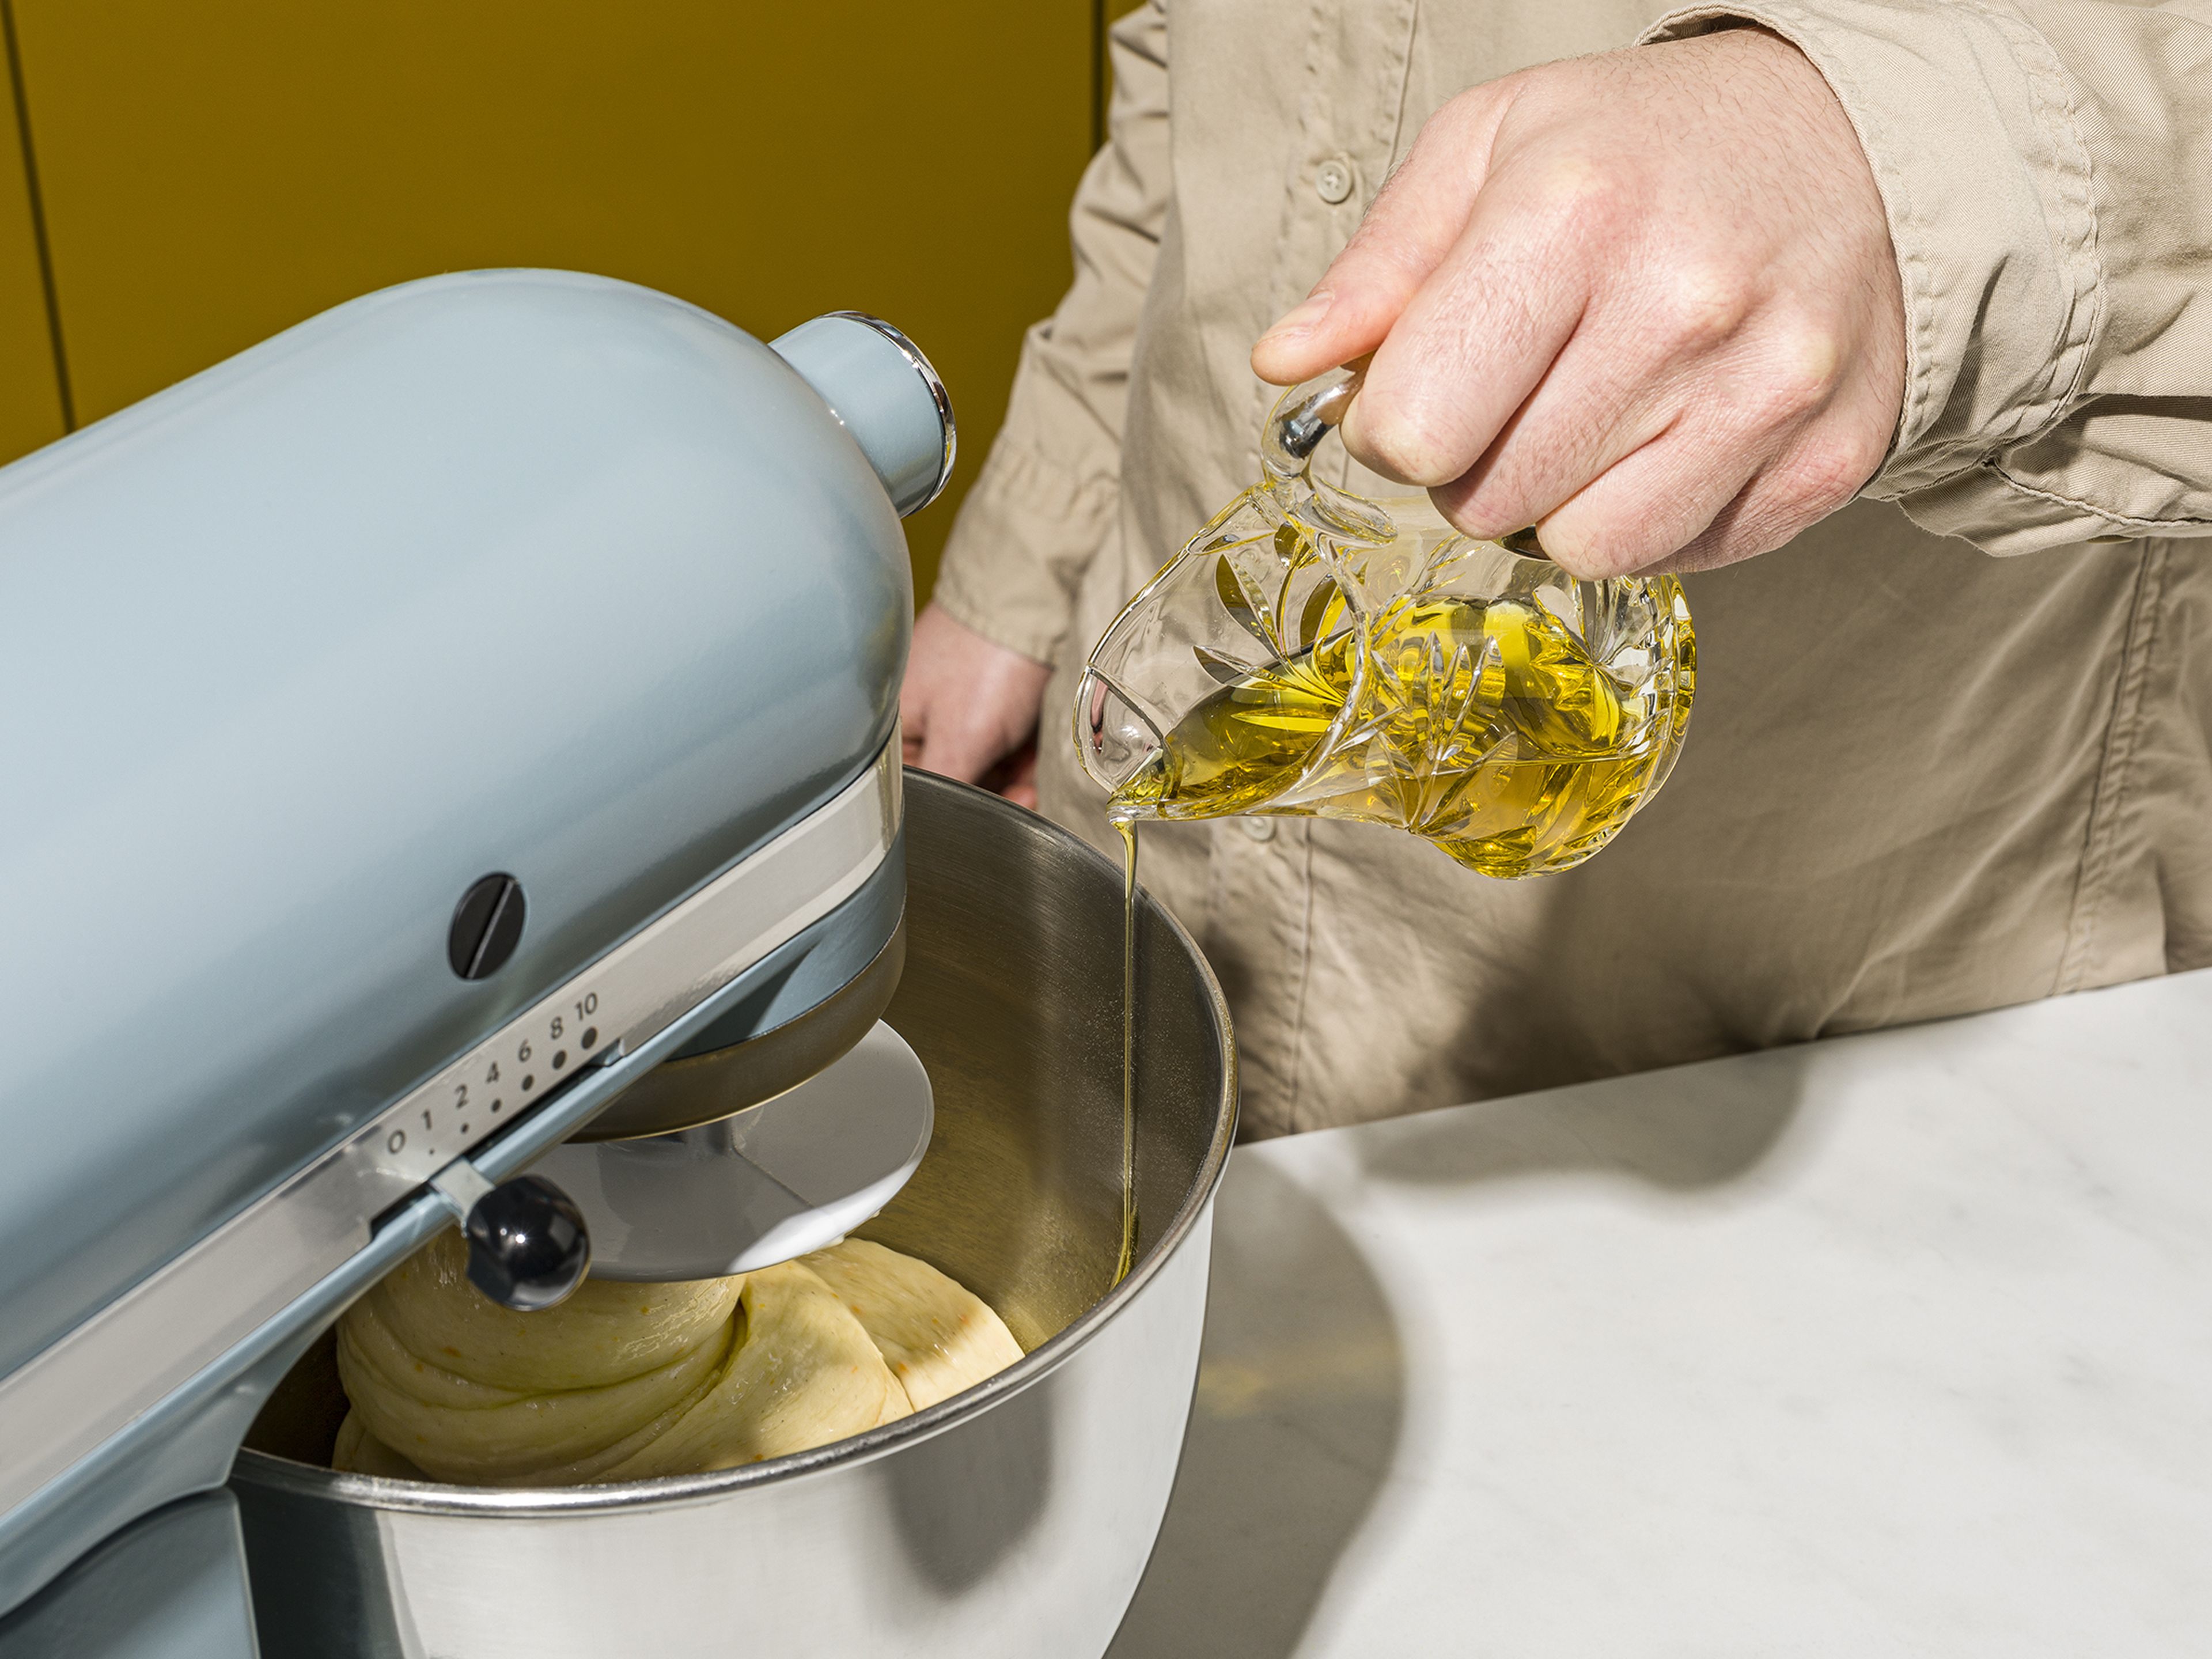 Für den Grundteig restliches Mehl mit Zucker und der restlichen Hefe, Honig, Milch, einem Teil der Eier, Orangenabrieb und Vanilleextrakt in einer Küchenmaschine verrühren, bis sich ein gleichmäßiger Teig bildet. Nun der Reihe nach den Vorteig, anschließend das Salz und zuletzt ein Viertel des Olivenöles hinzufügen. Sobald die Zutaten vollständig in den Teig eingearbeitet sind, kann das restliche Öl untergemischt werden. Teig für weitere 5 Min. bei hoher Geschwindigkeit in der Maschine kneten.